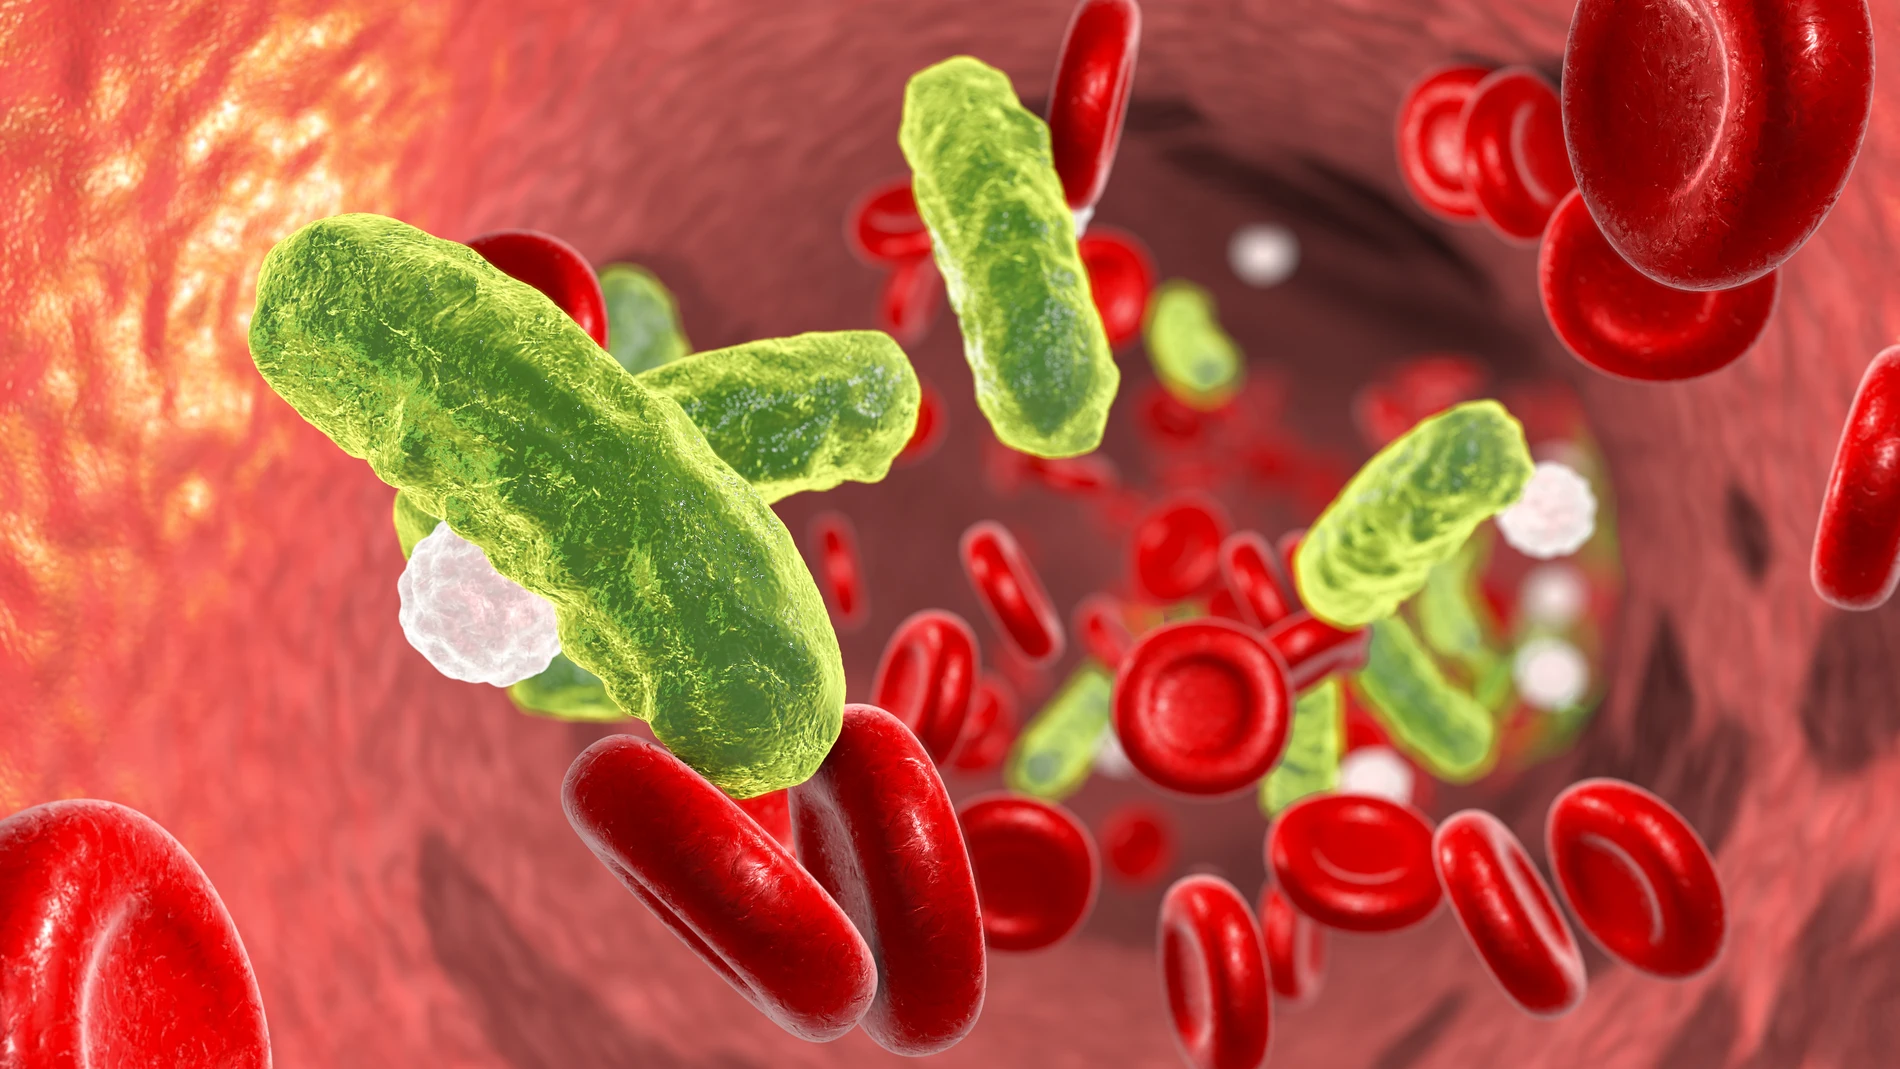 La septicemia es una infección producida por microorganismos patógenos en la sangre